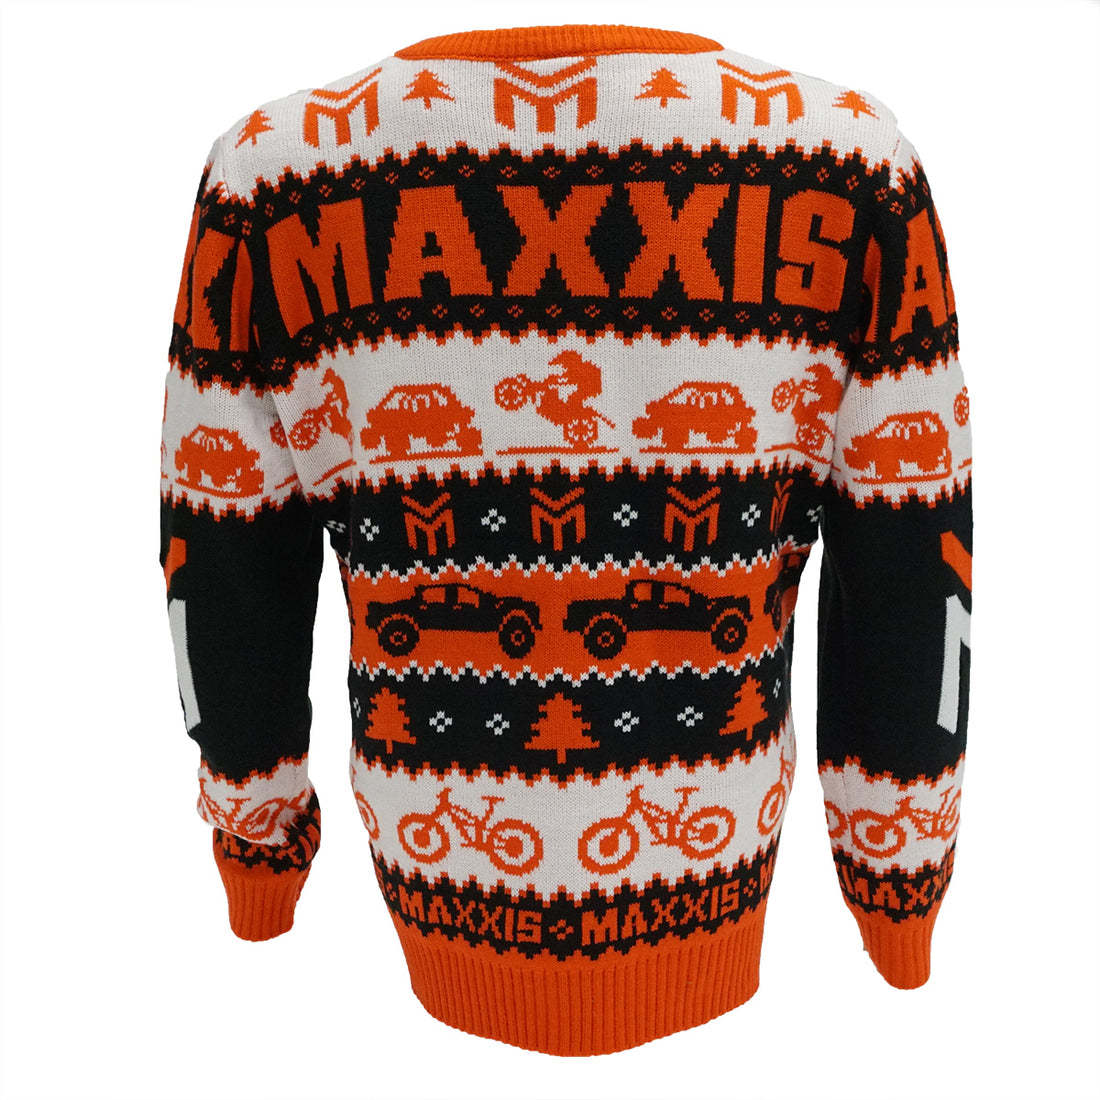 Maxxis Tacky Holiday Sweater